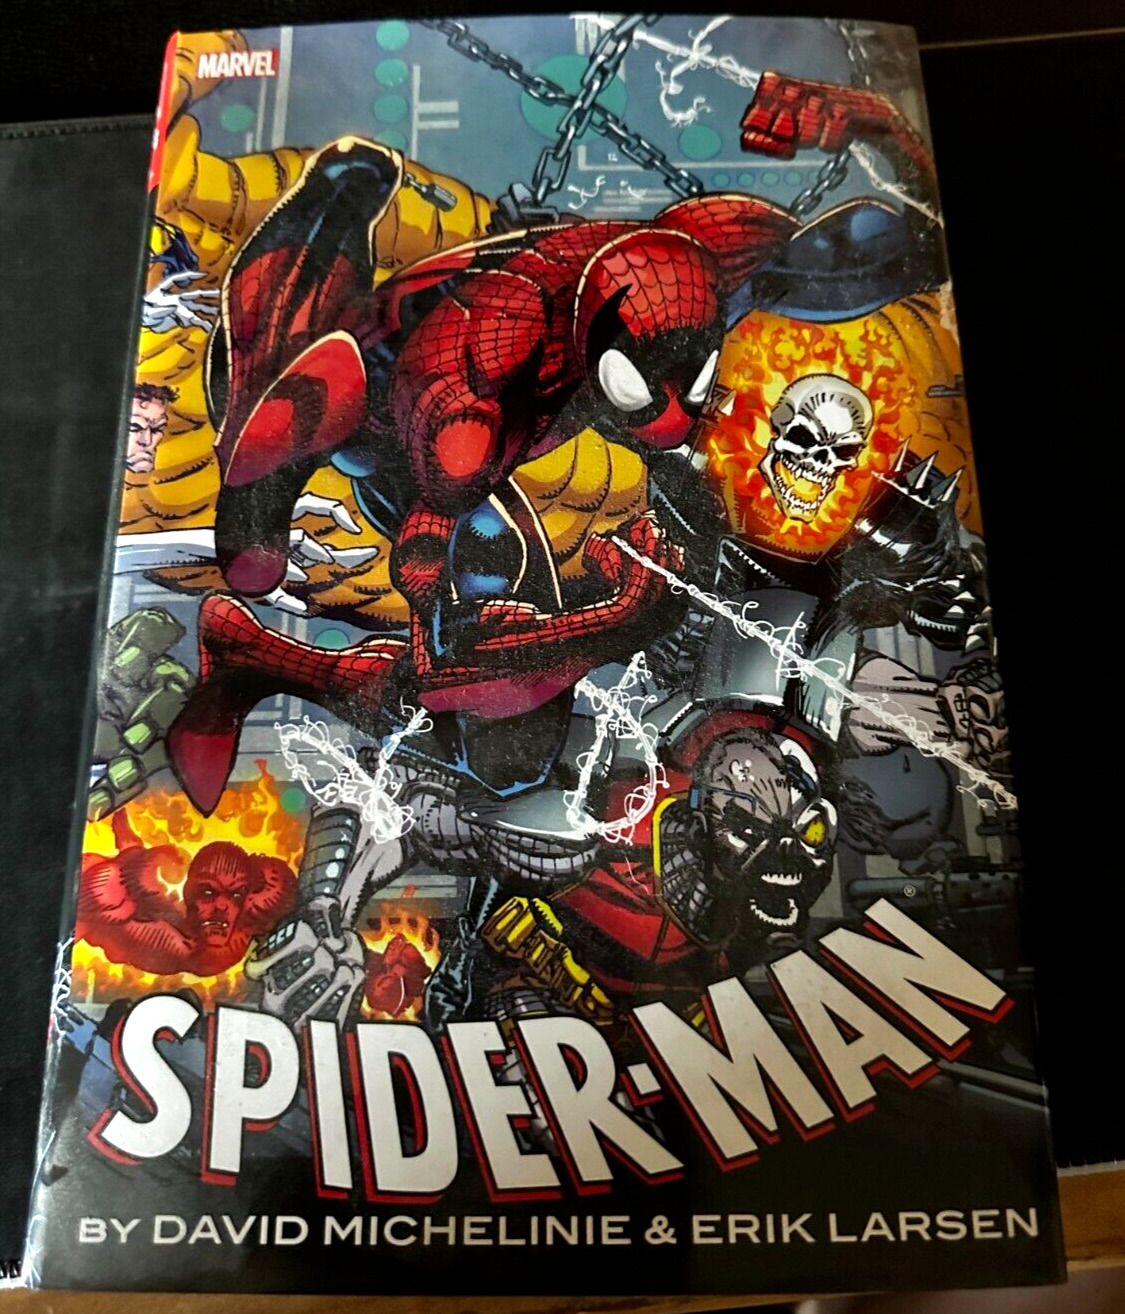 Spider-Man by David Michelinie and Erik Larsen Omnibus (Marvel) - Pre-Owned